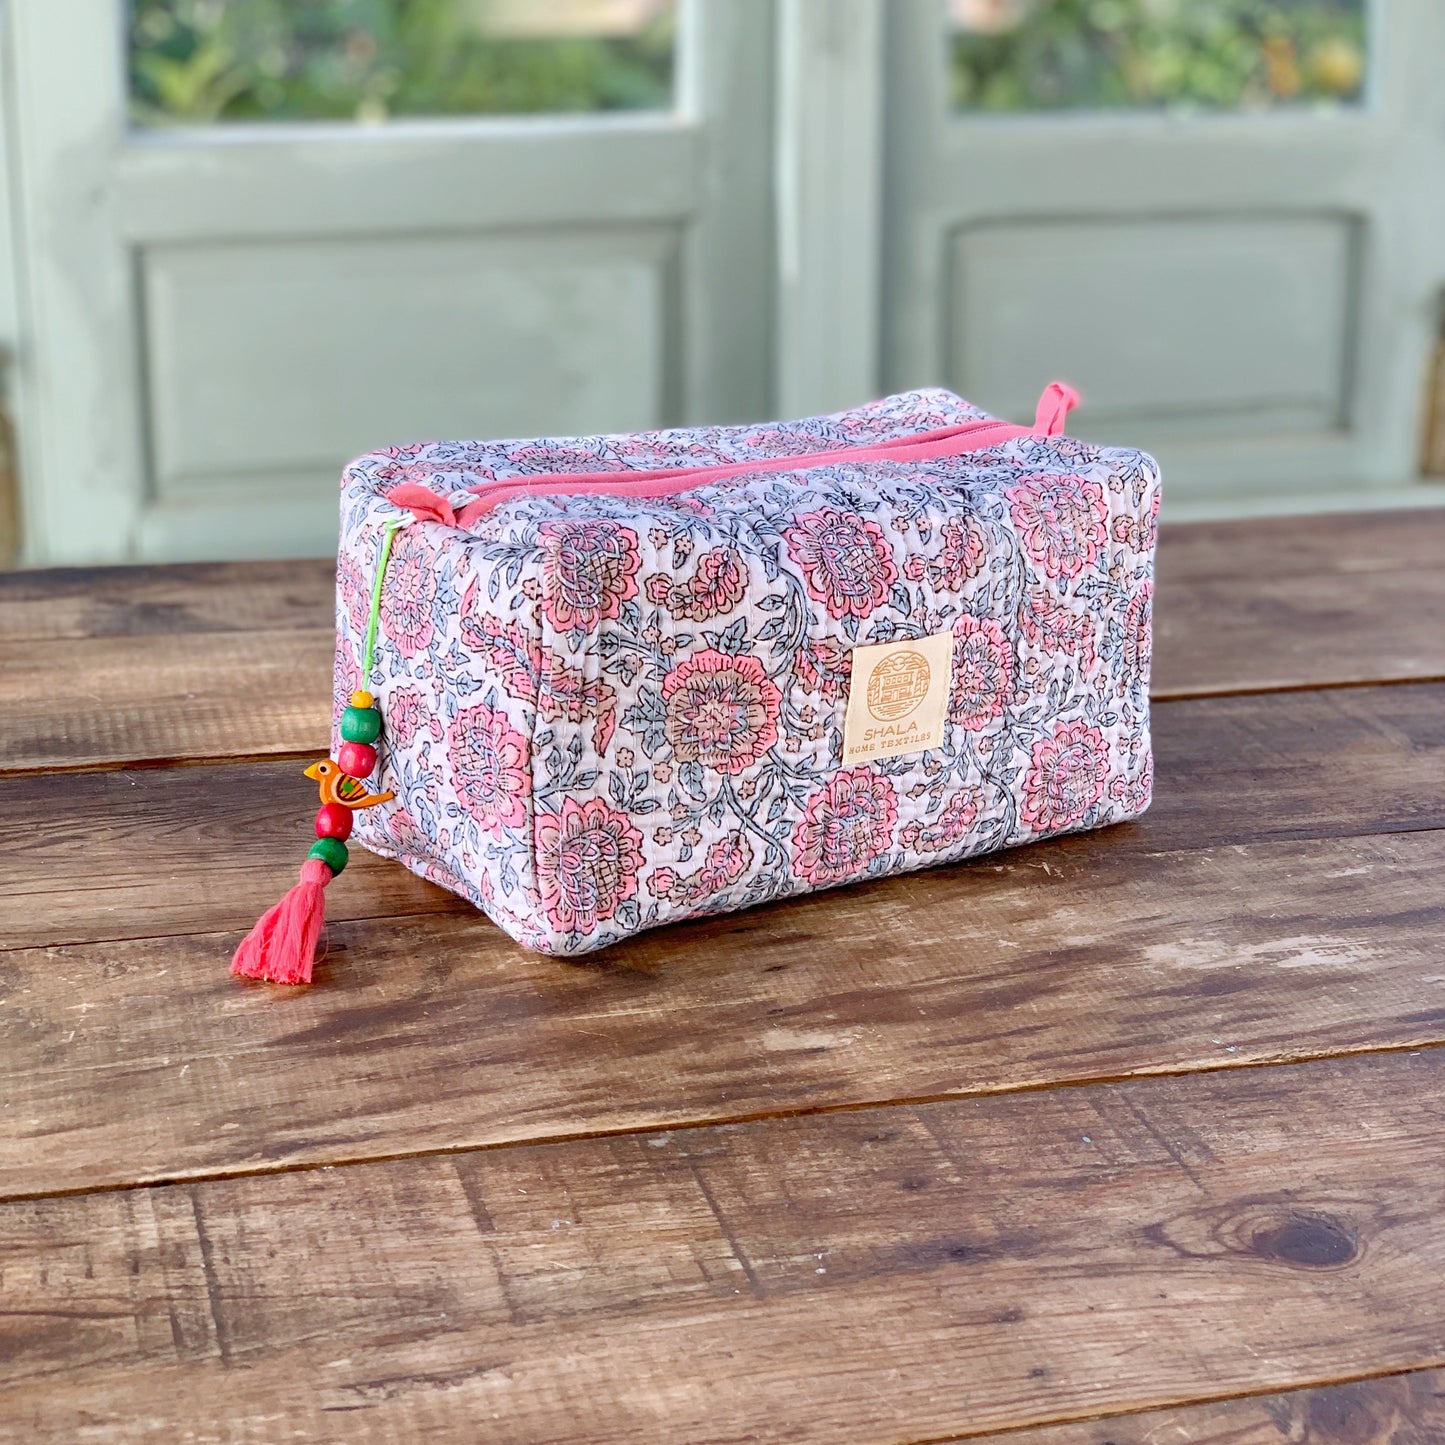 SET regalo · Bata kimono y bolsa de aseo juego · Algodón 100% puro estampado block print artesanal en India · Agua rosa